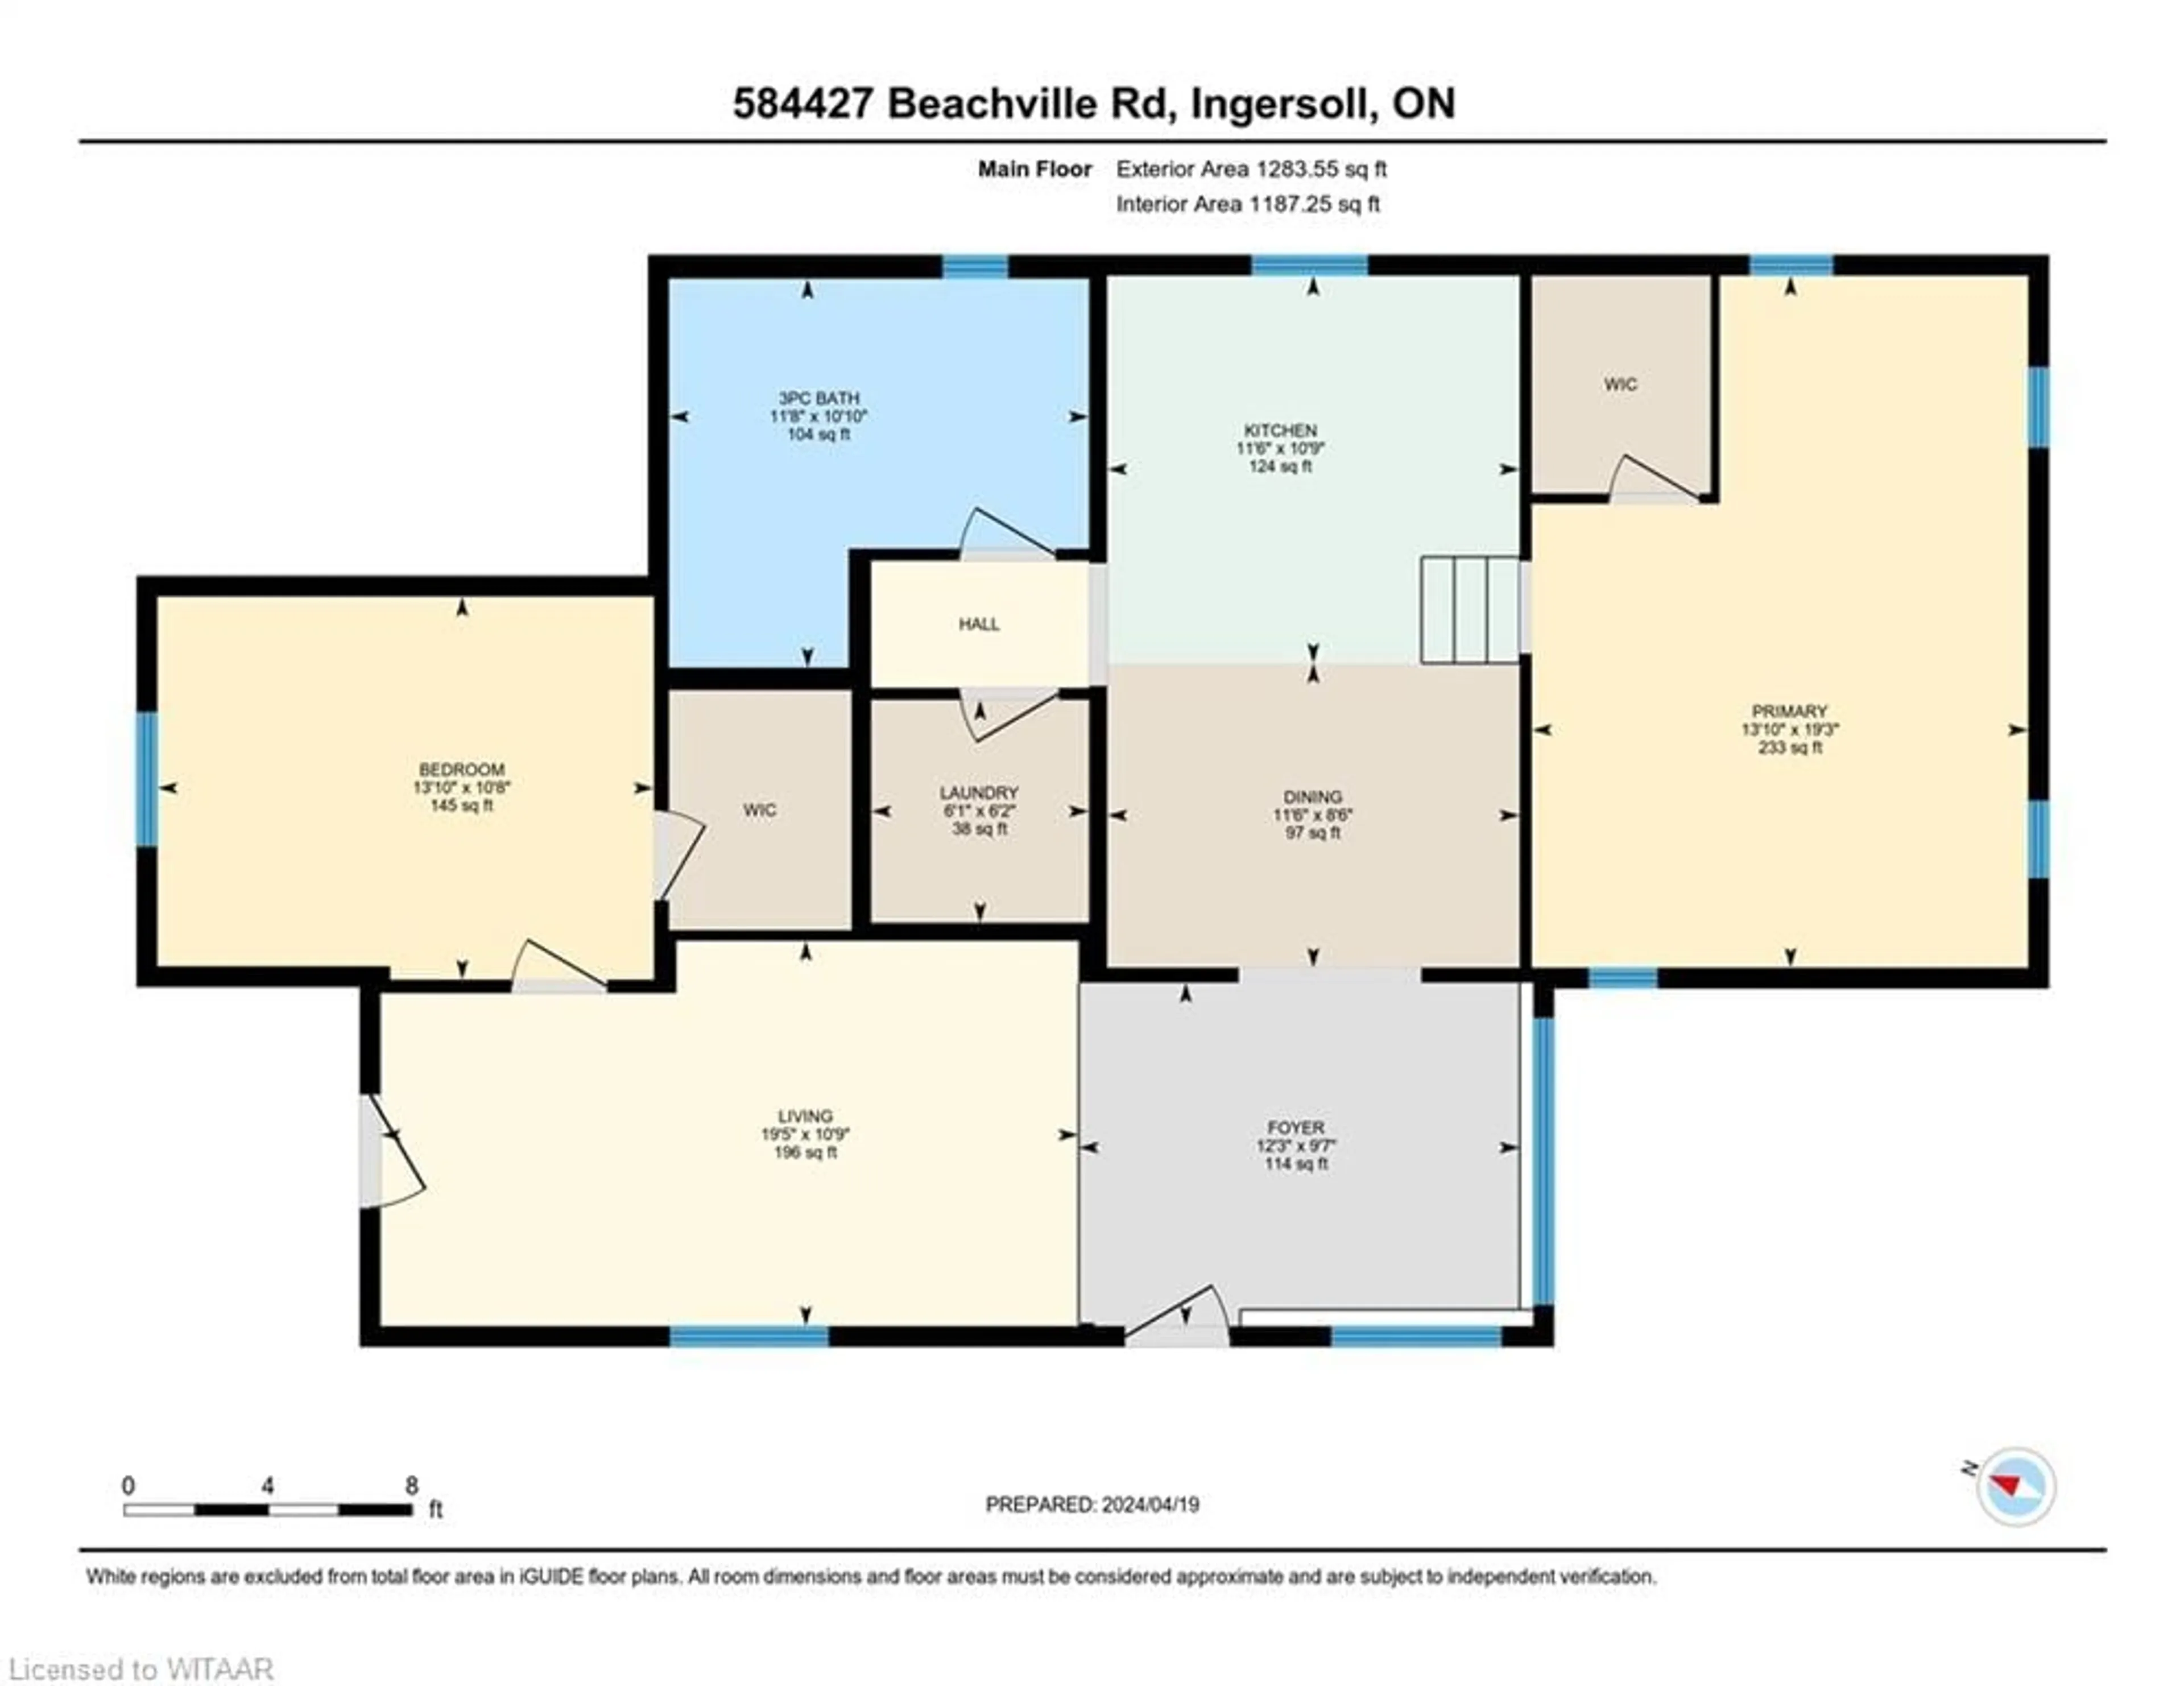 Floor plan for 584427 Beachville Rd, Beachville Ontario N0J 1A0